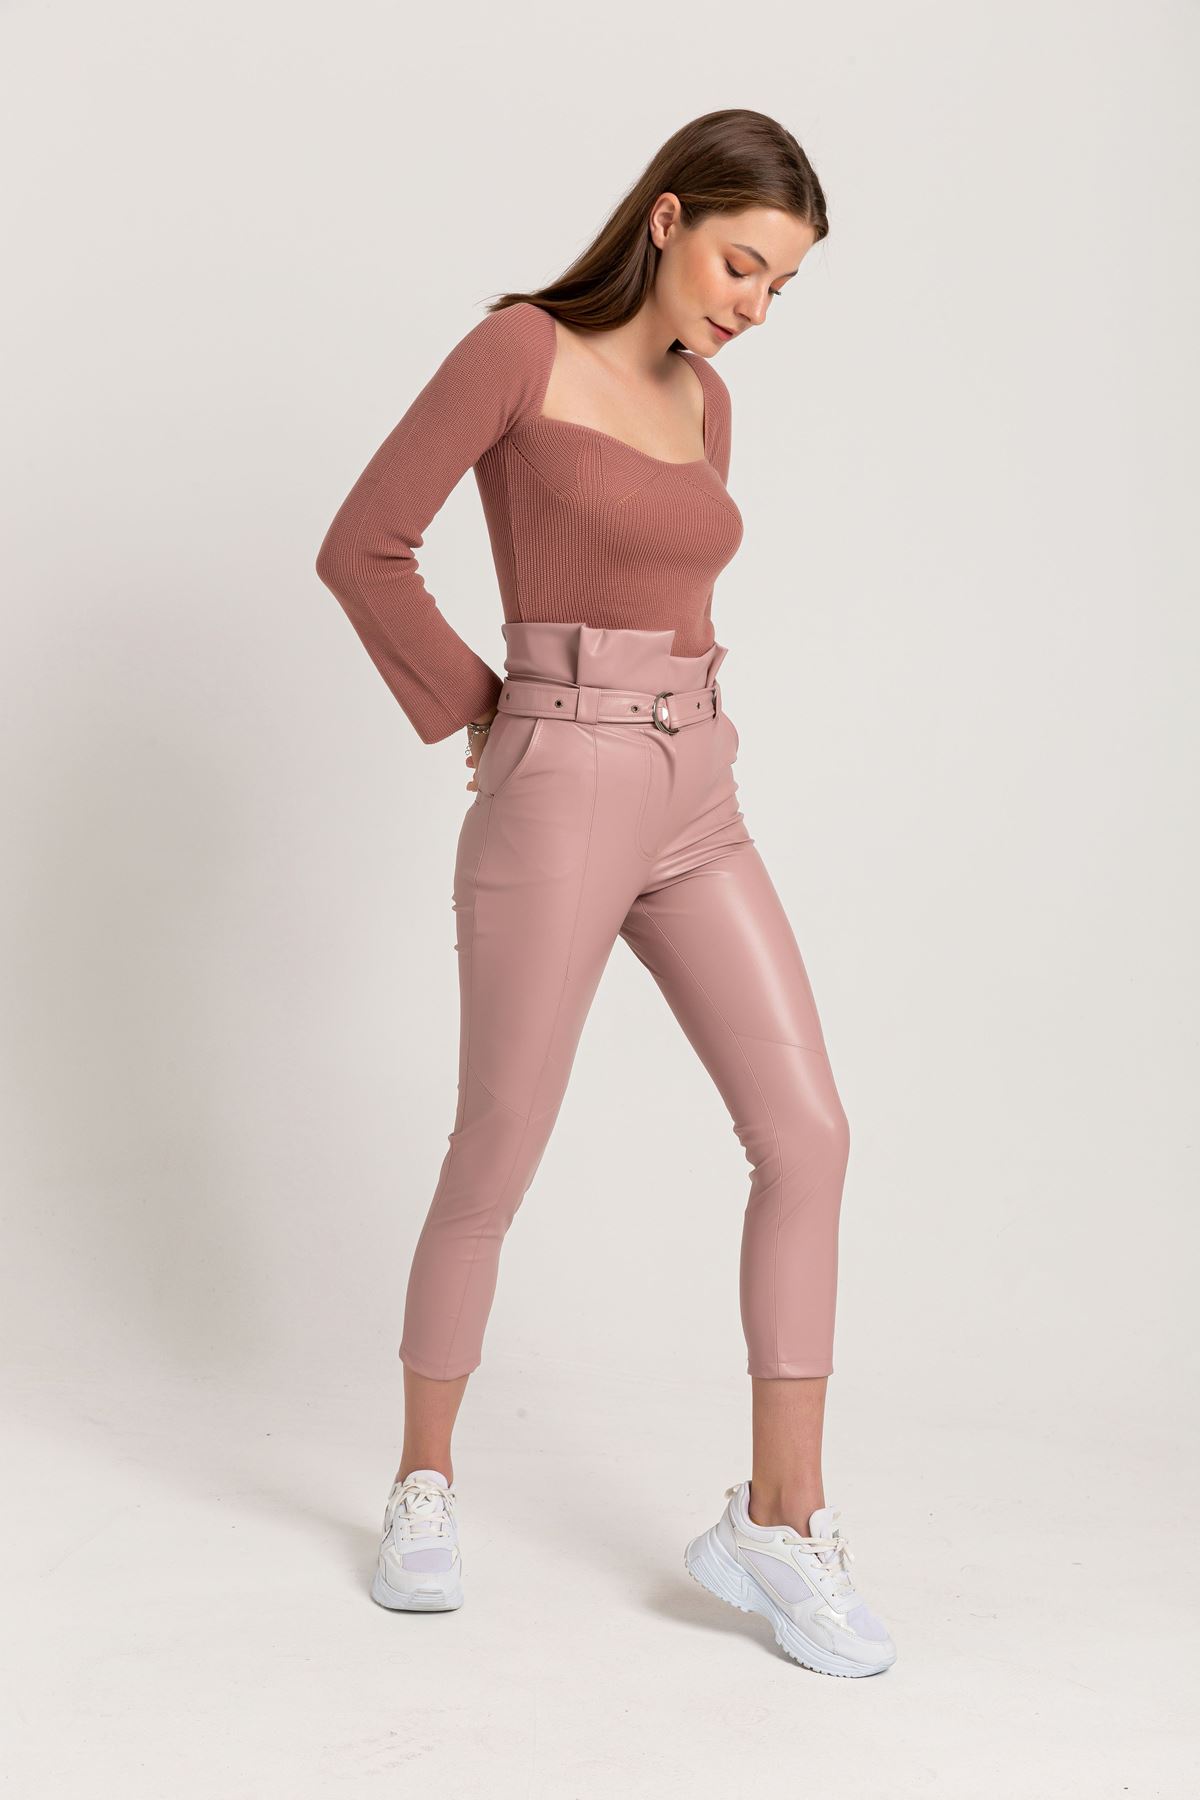 Leather Fabric Long Tigth Fit High Waist Belt Women'S Trouser - Light Pink